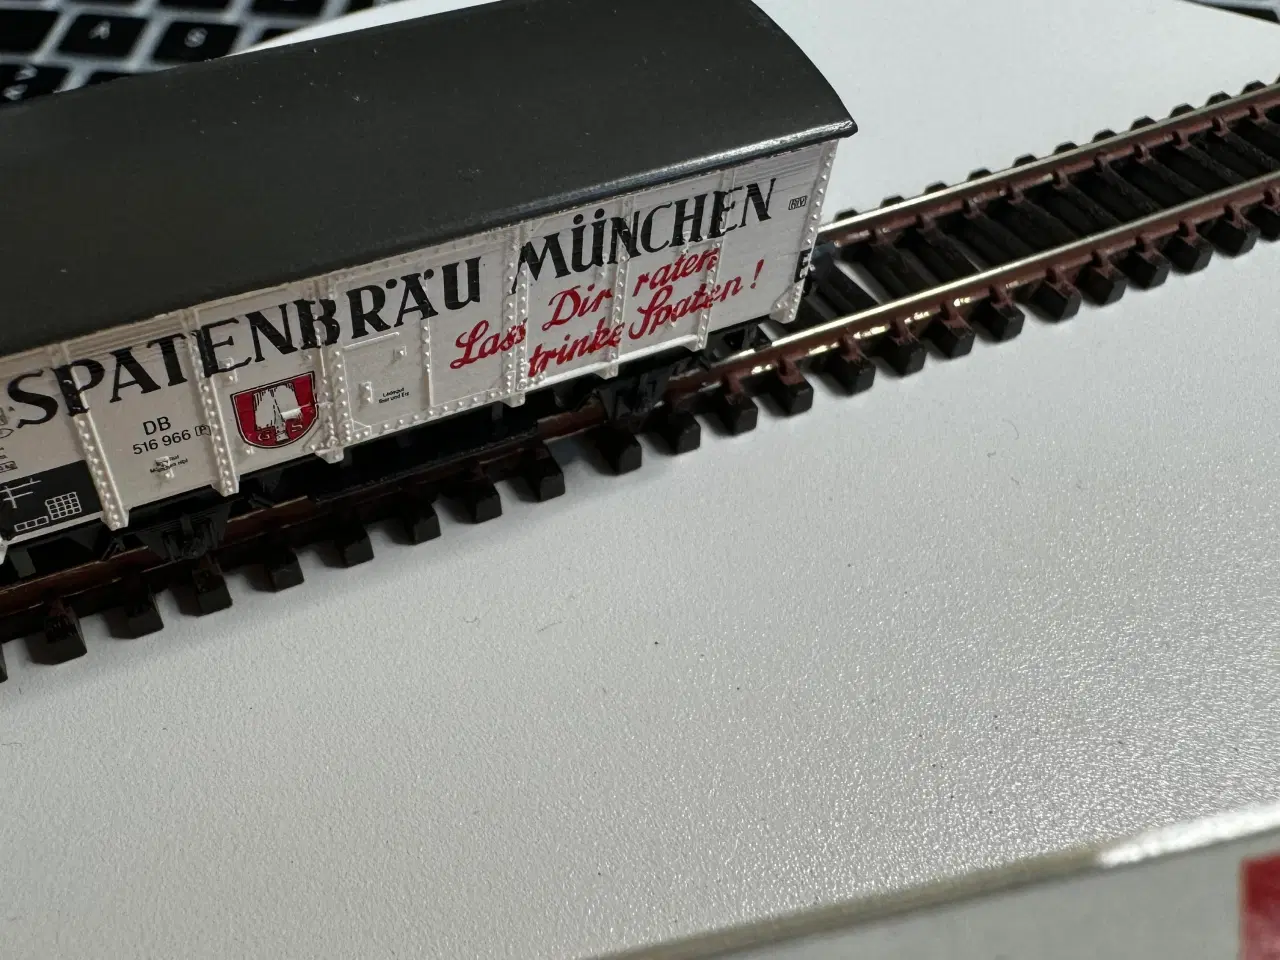 Billede 2 - SPOR N - Modeltog Spatenbrau  München godsvogn